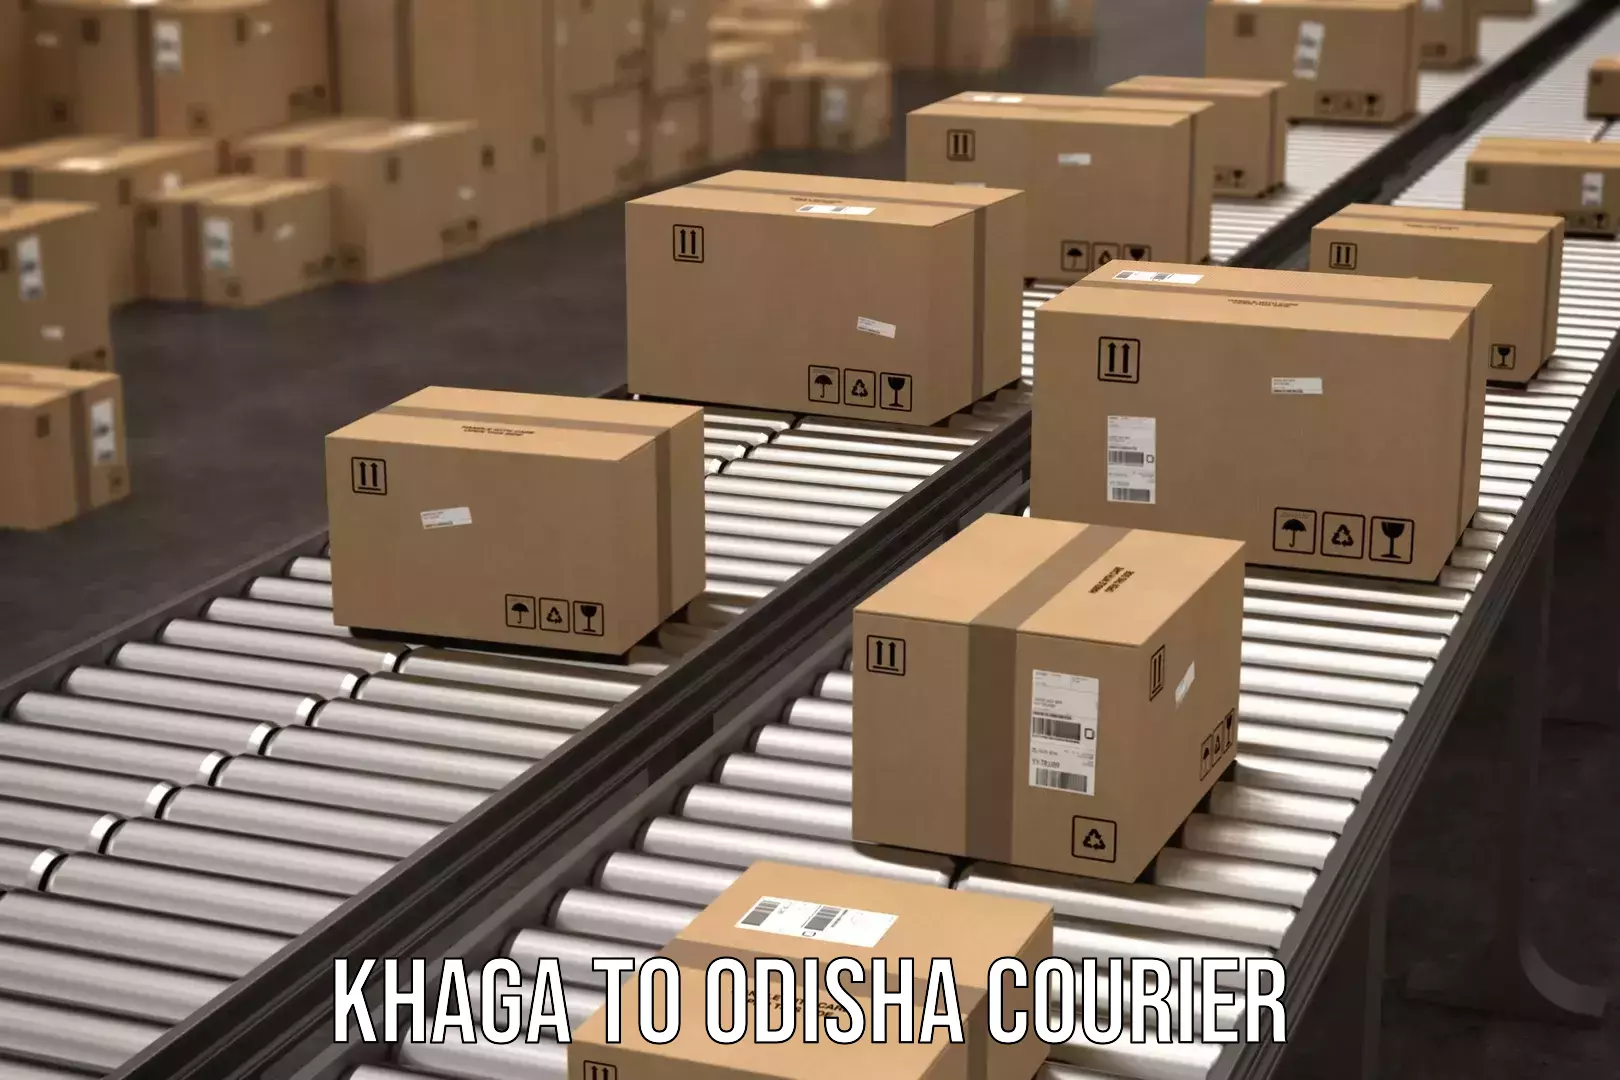 Doorstep delivery service in Khaga to Odisha